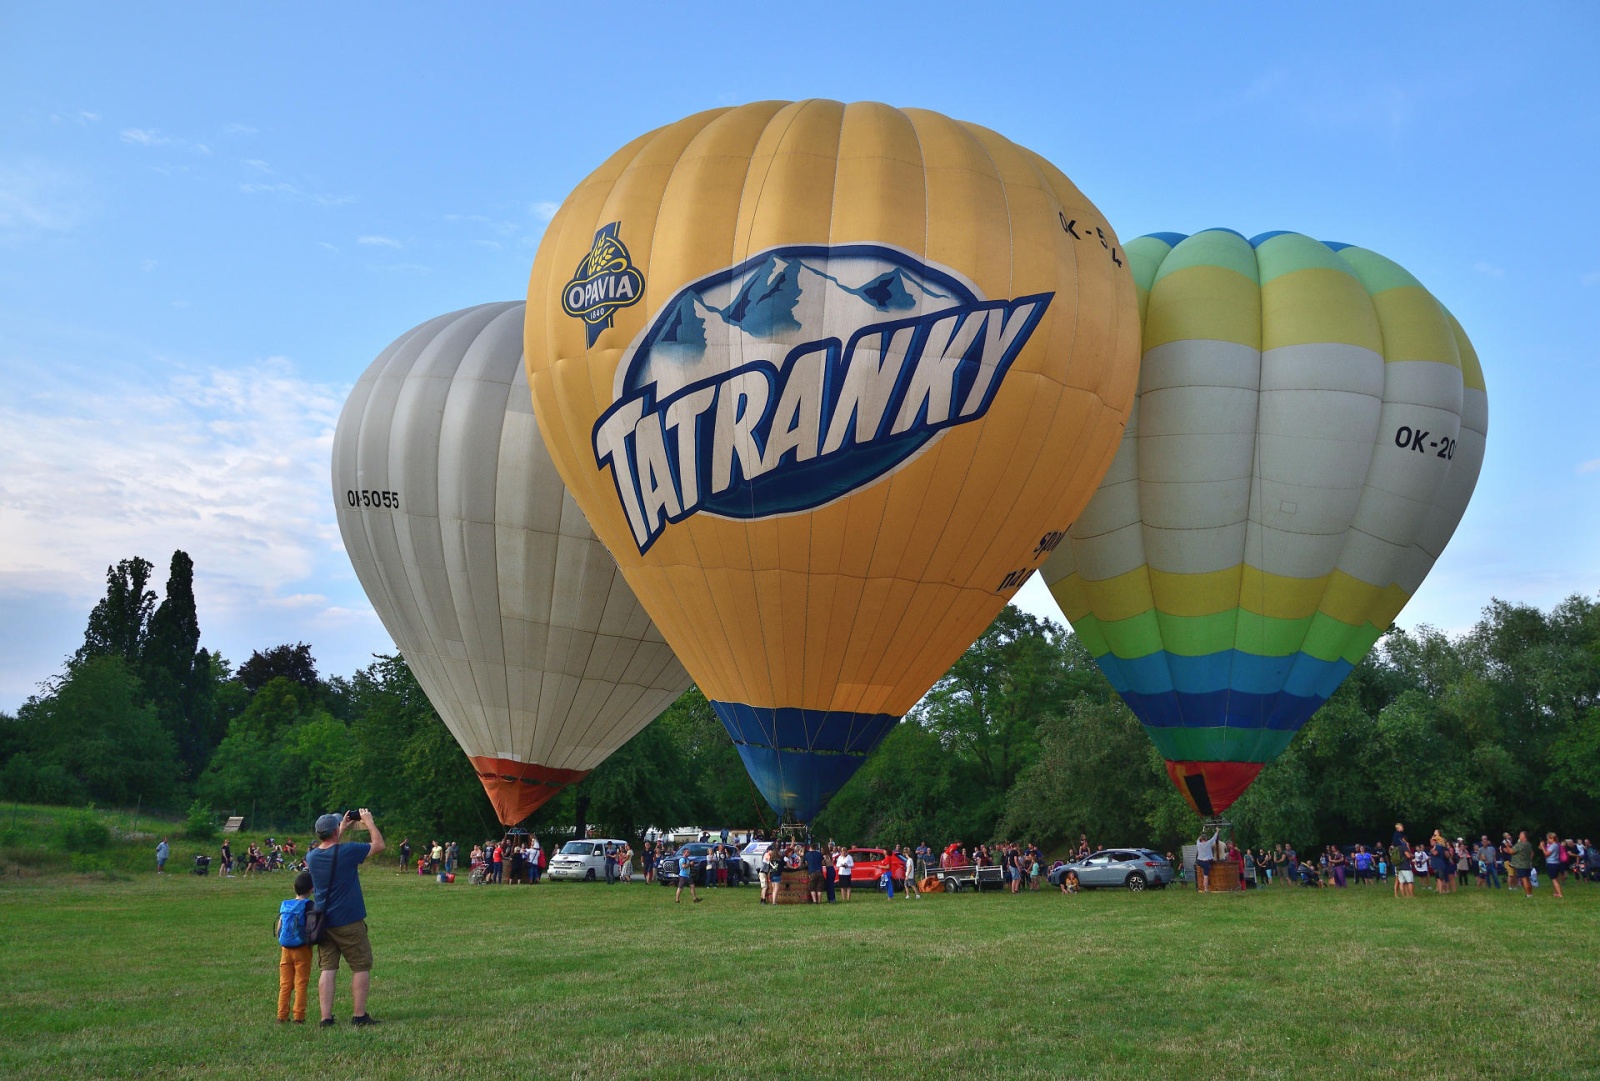 FOTO, VIDEO: Vzhůru do oblak! Balony se vznášely vysoko nad hlavami diváků  - Pardubický deník